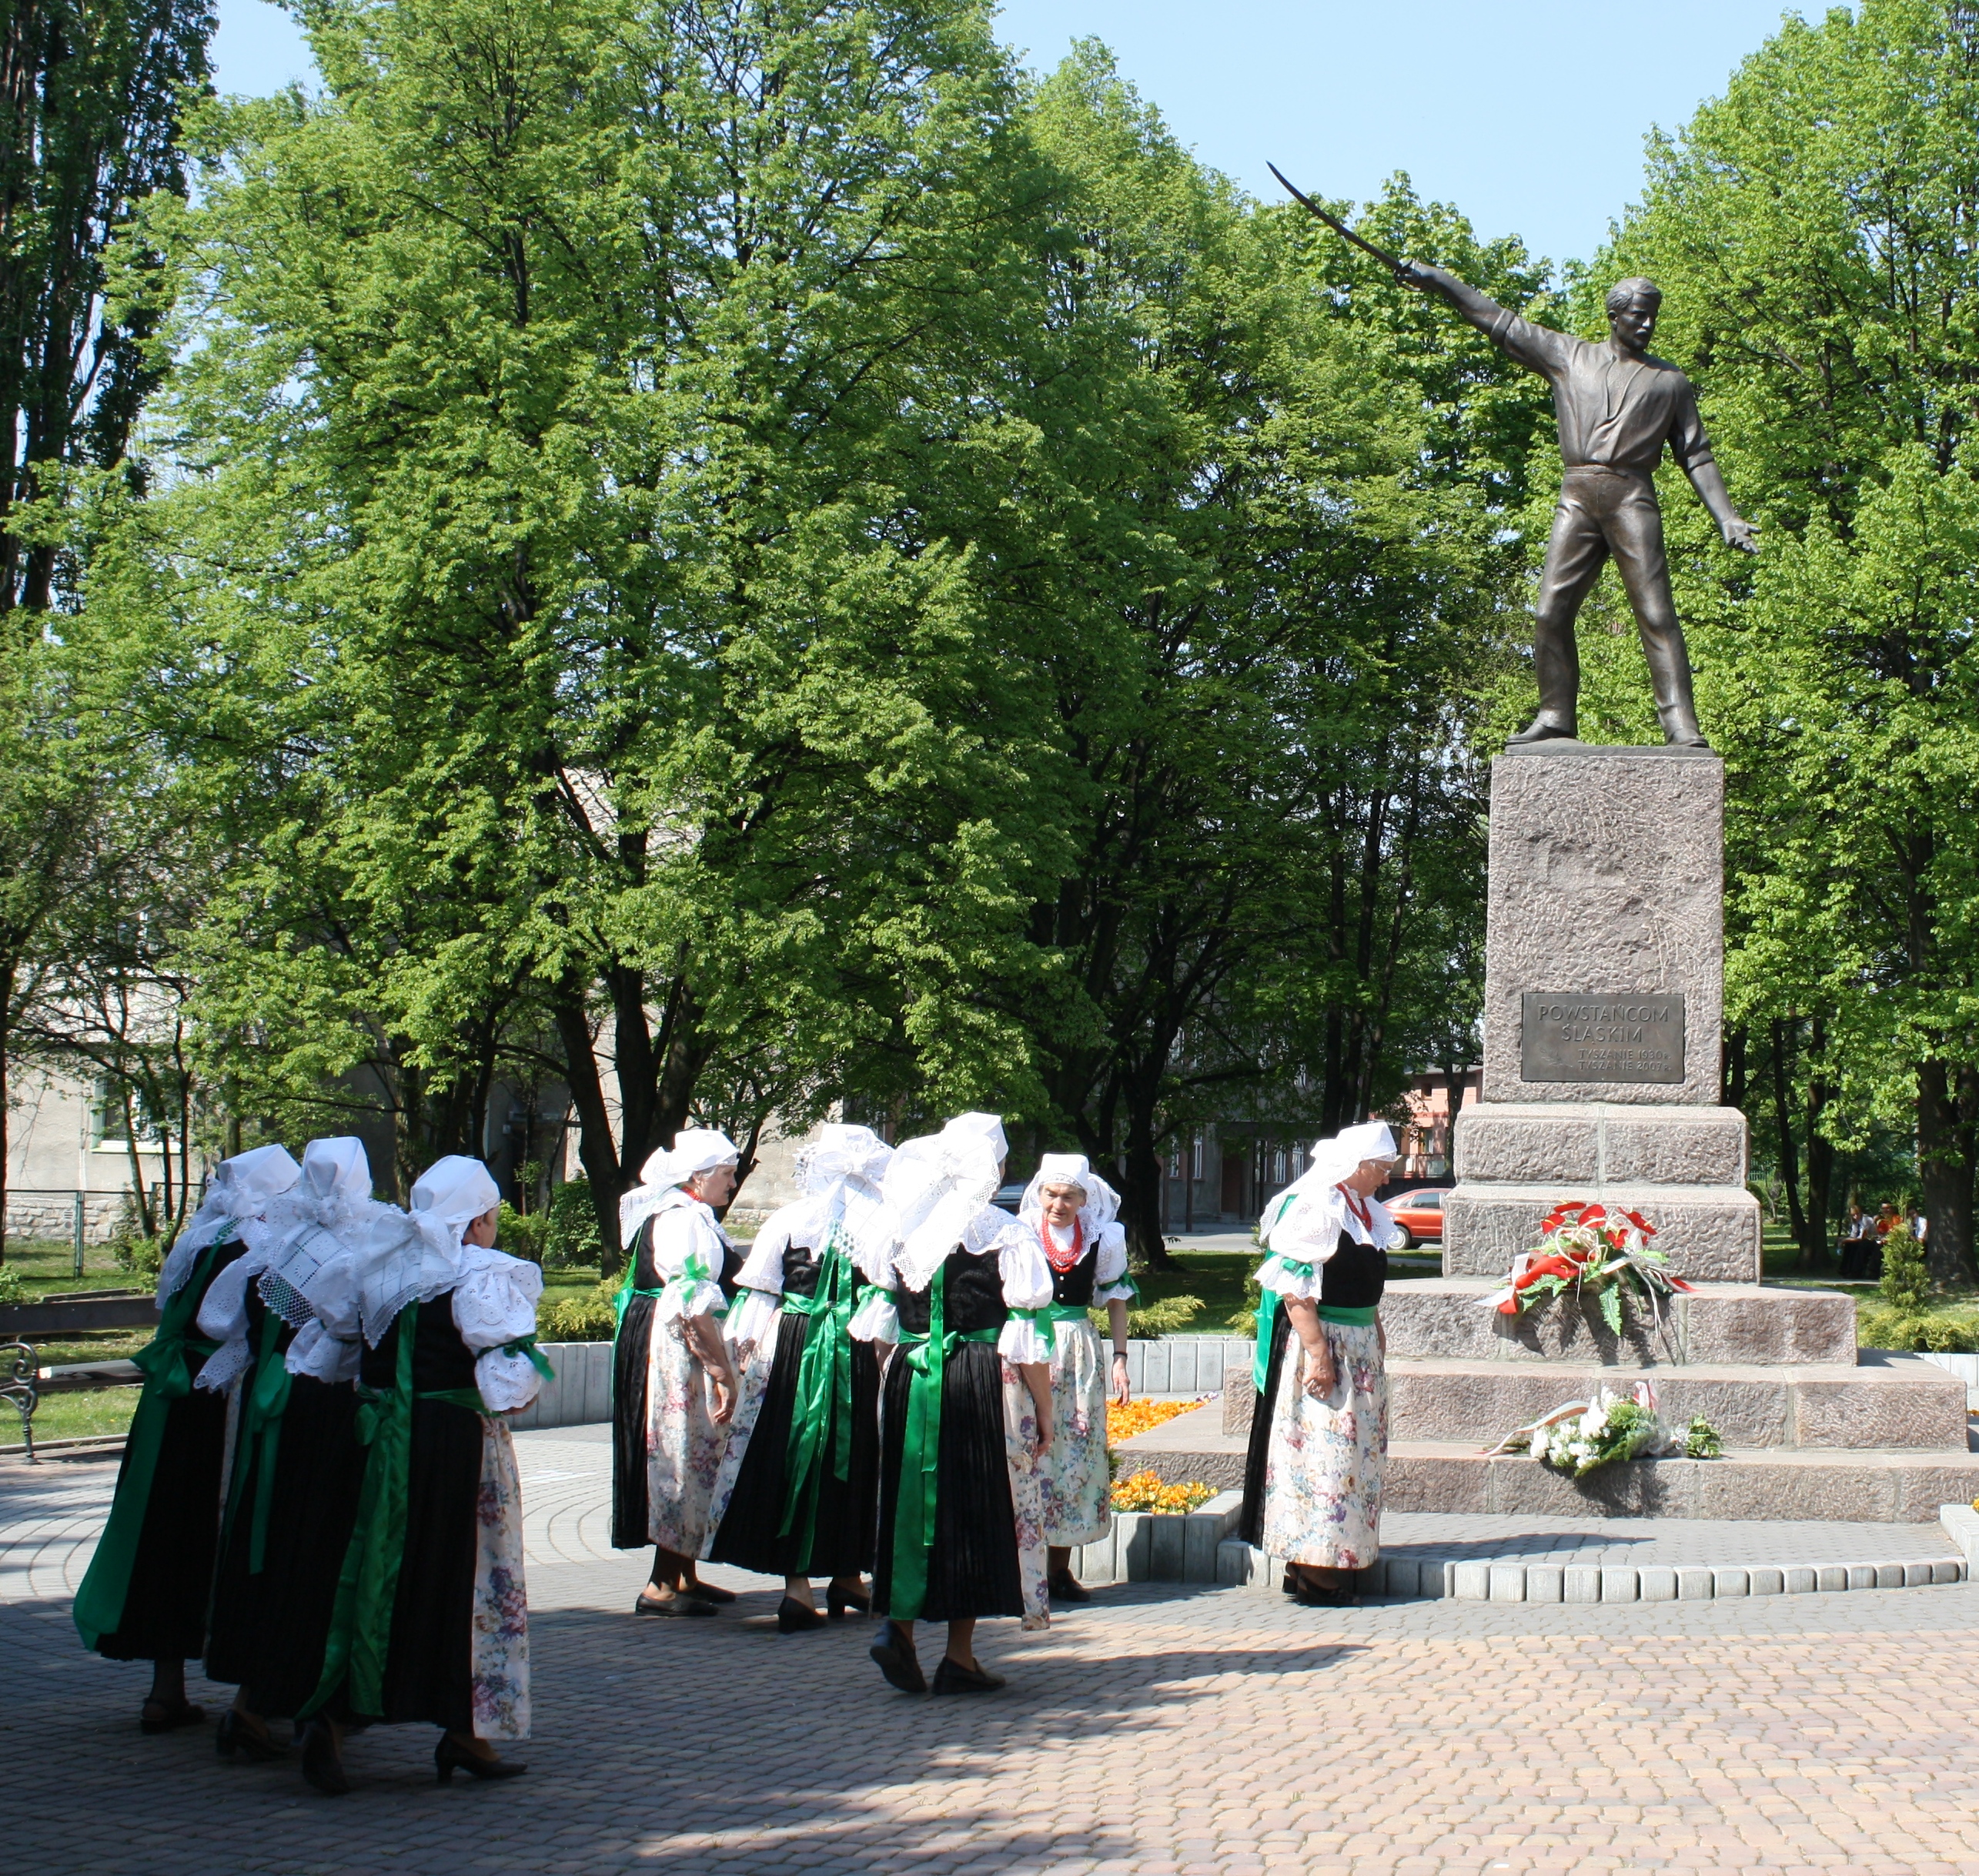 Przy pomniku powstańca śląskiego w Tychach w święto 3 Maja; kobiety w strojach pszczyńskich. Fot. Maria Lipok-Bierwiaczonek, 2009